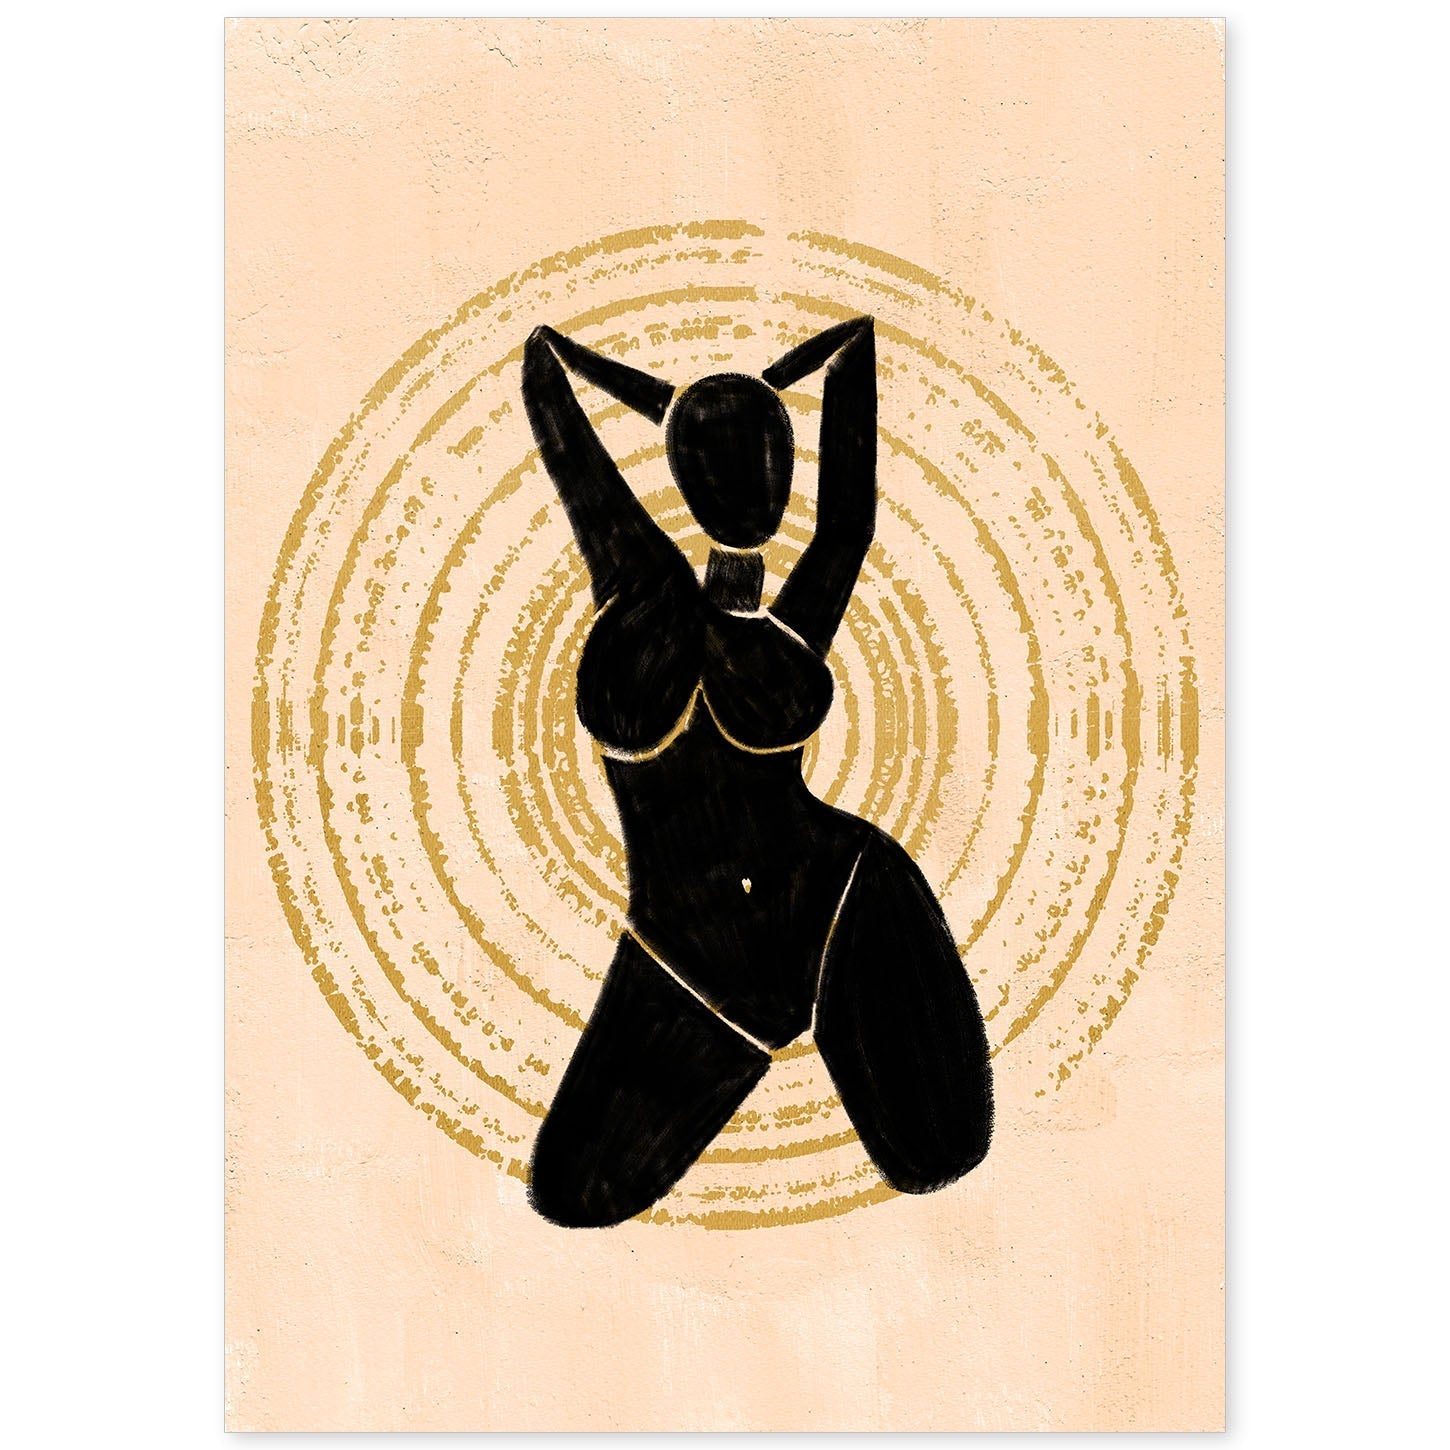 Poster con ilustracion de mujer. Dibujos con formas, caras, cuerpos y gestos de mujeres. 'Mujeres 11'.-Artwork-Nacnic-A4-Sin marco-Nacnic Estudio SL